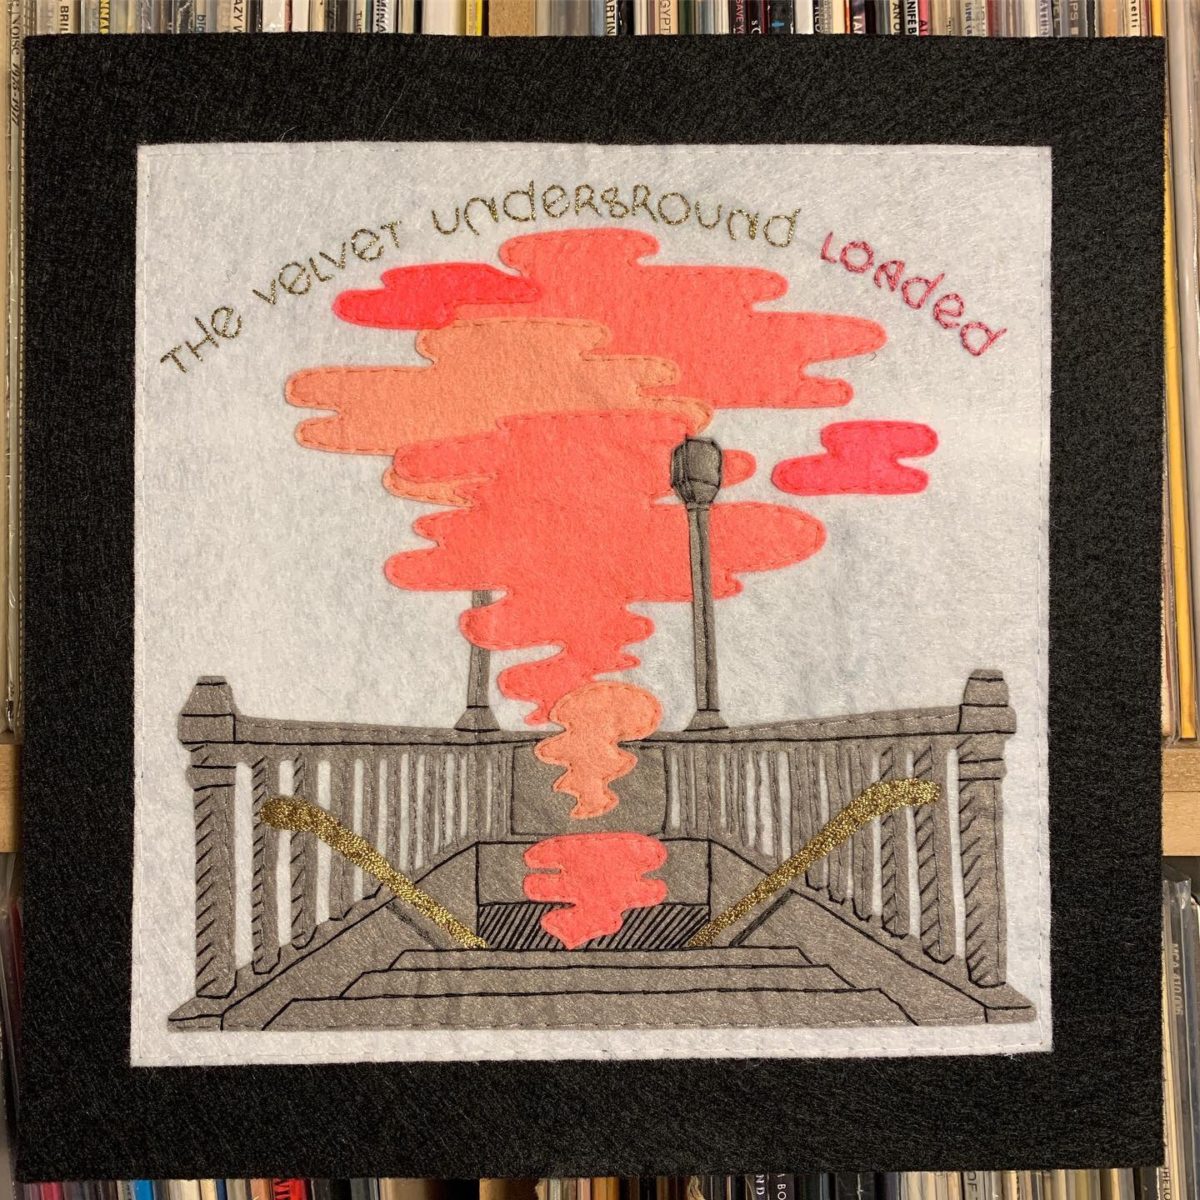 The Velvet Underground – Loaded (1970)